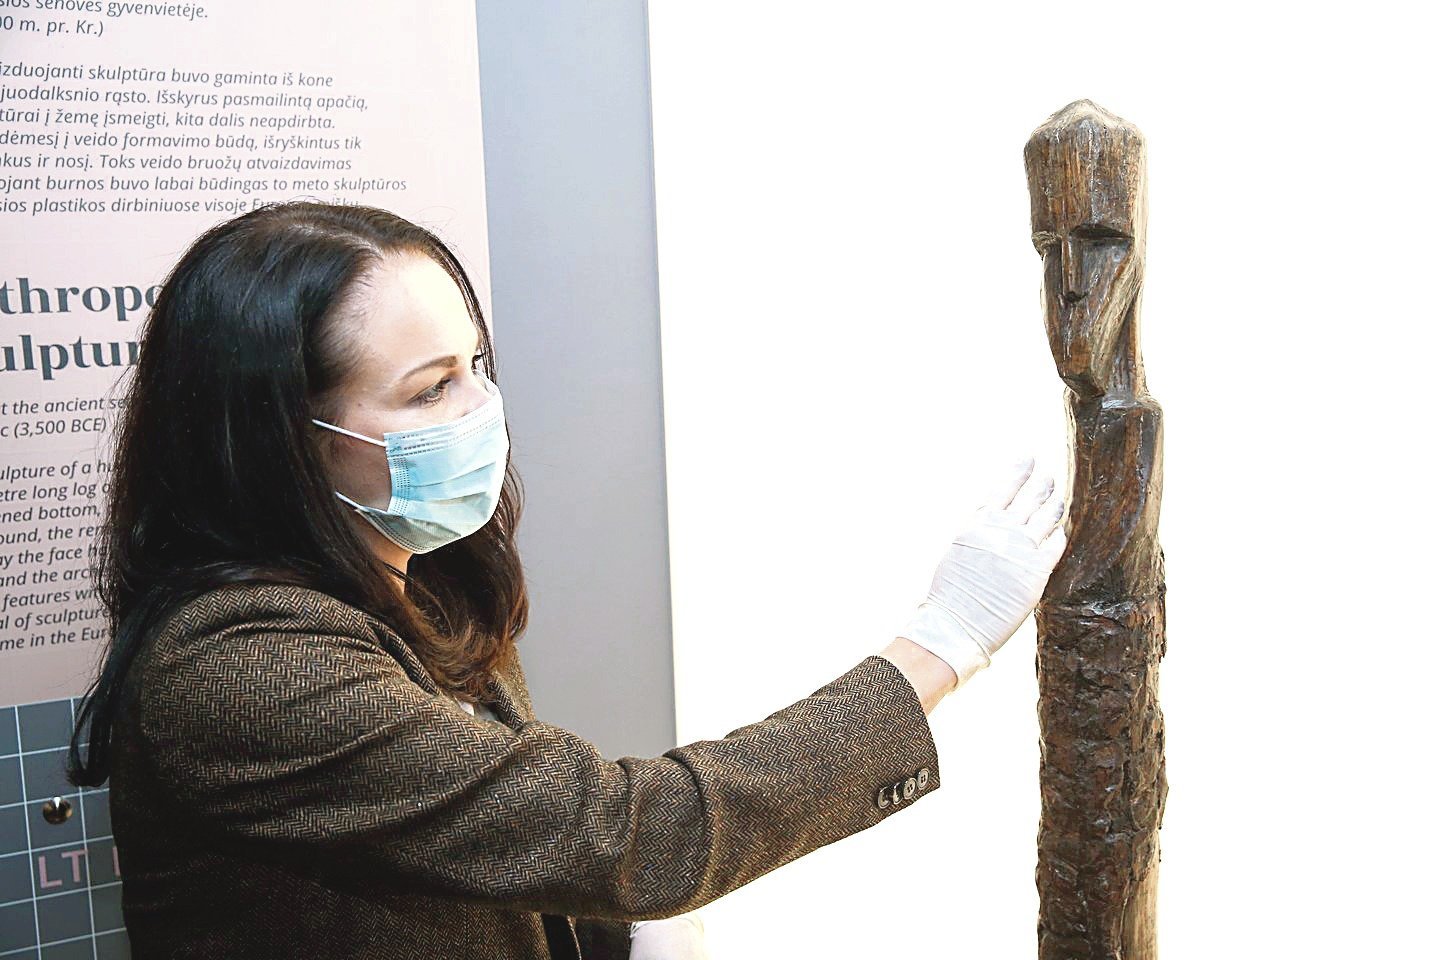 Nacionaliniame muziejuje prieš karantiną atidarytoje parodoje lankytojai buvo aprūpinti vienkartinėmis pirštinėmis.<br>R.Danisevičiaus nuotr.